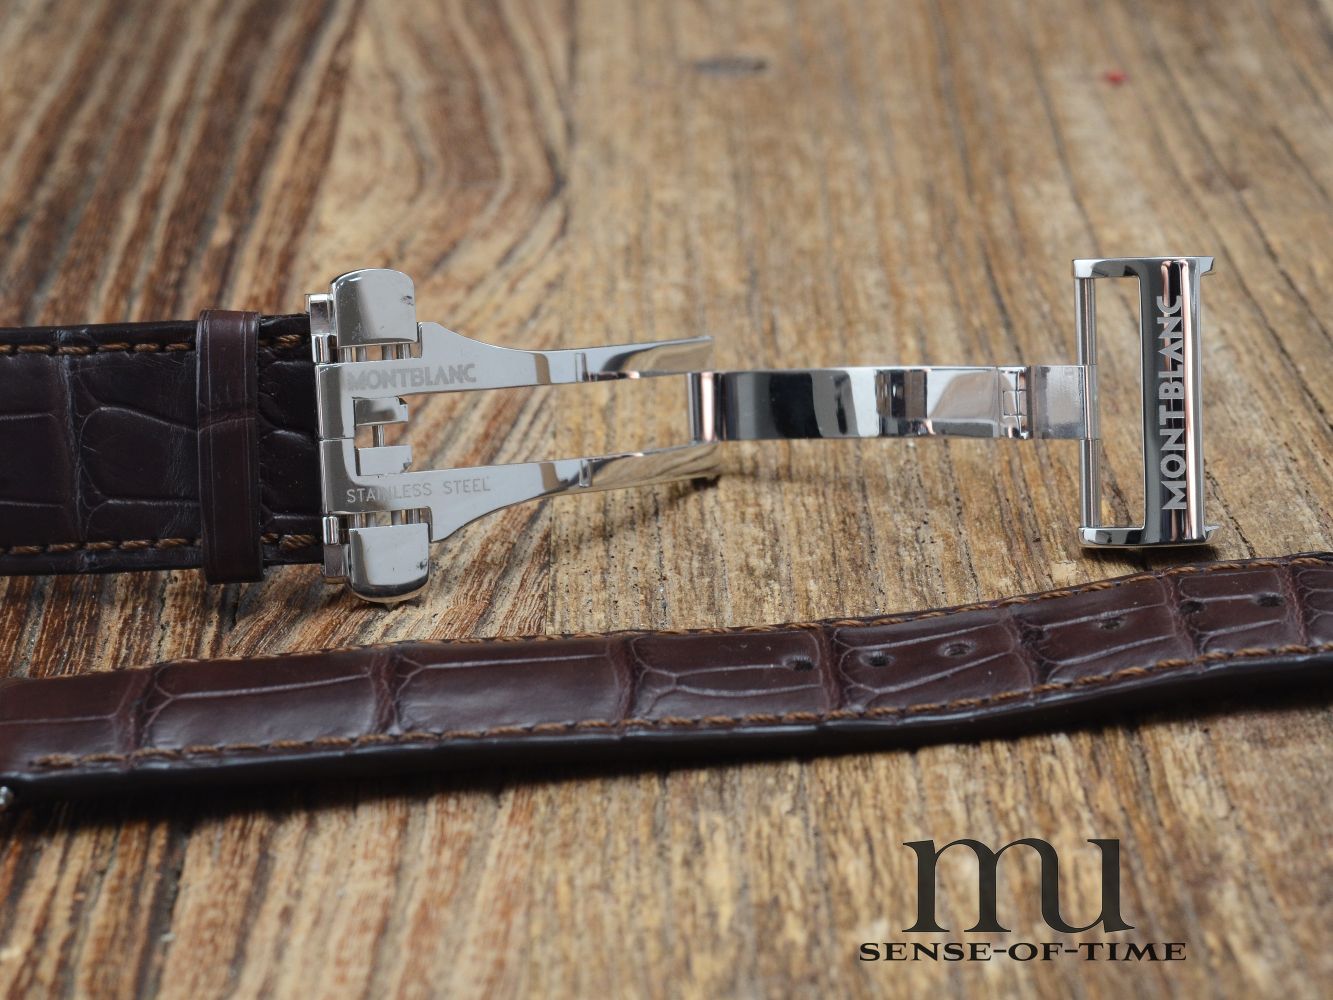 Zubehör: Montblanc Krokolederband mit Faltschließe, braun, 22mm NOS